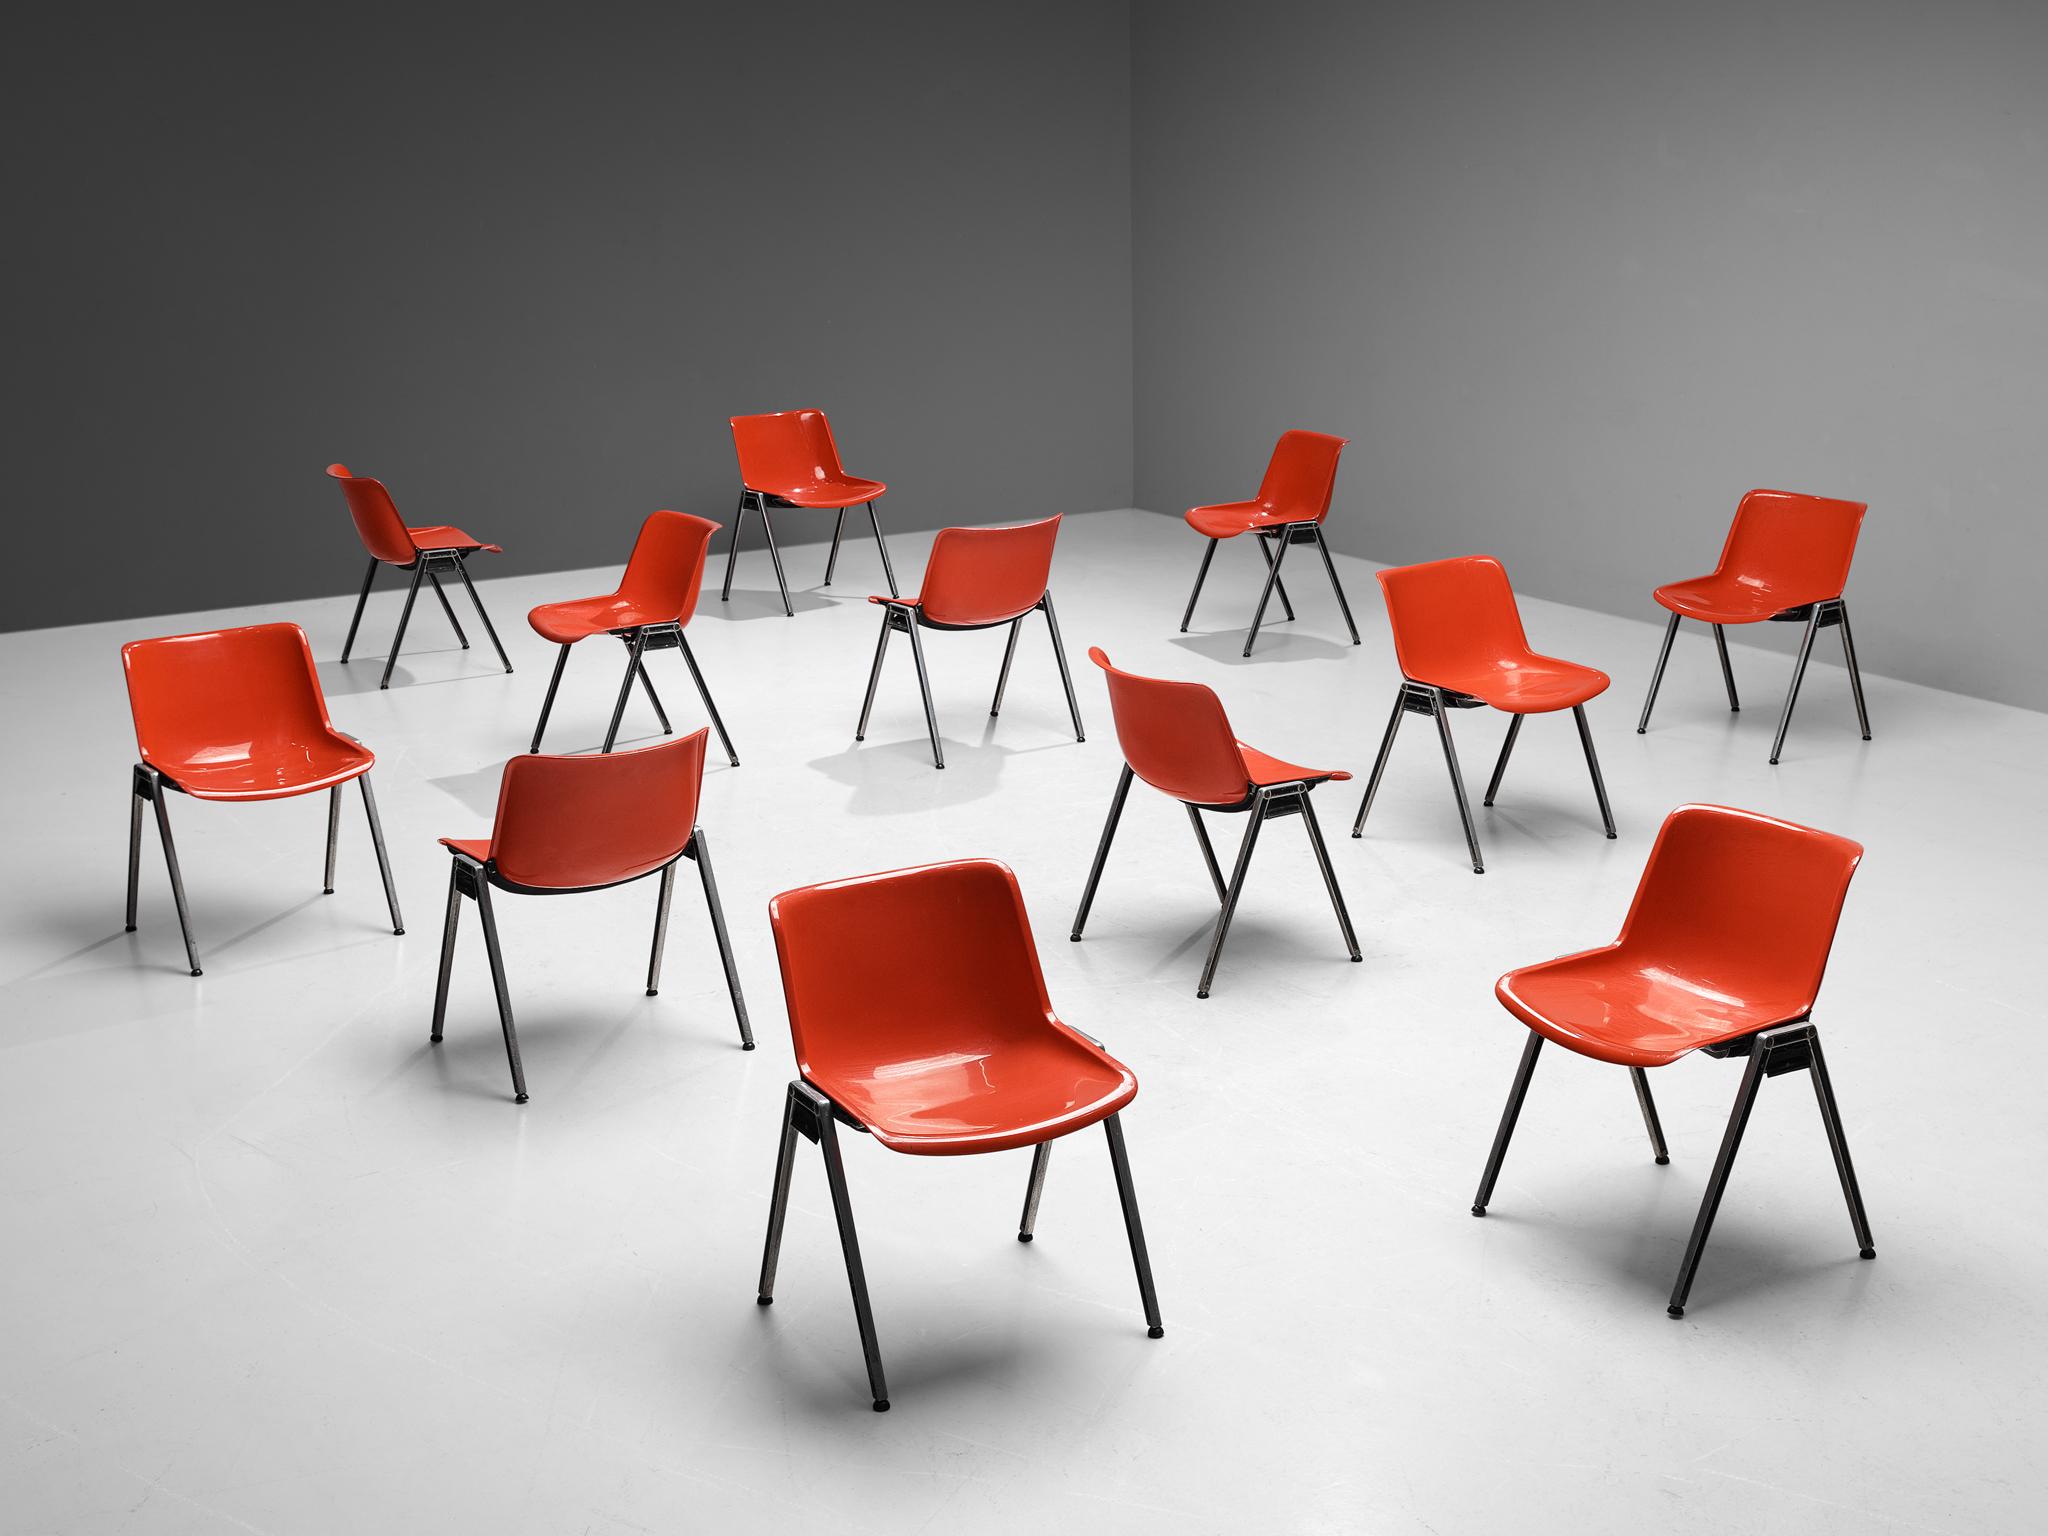 Centro Progetti Tecno, Satz von zwölf stapelbaren Stühlen Modell 'Modus', Nylon / Kunststoff, Aluminium, Metall, Italien, 1970er Jahre.

Von Centro Progetti Tecno entworfene hochfunktionelle Stühle, die zum Sitzsystem Modus gehören, dem ersten